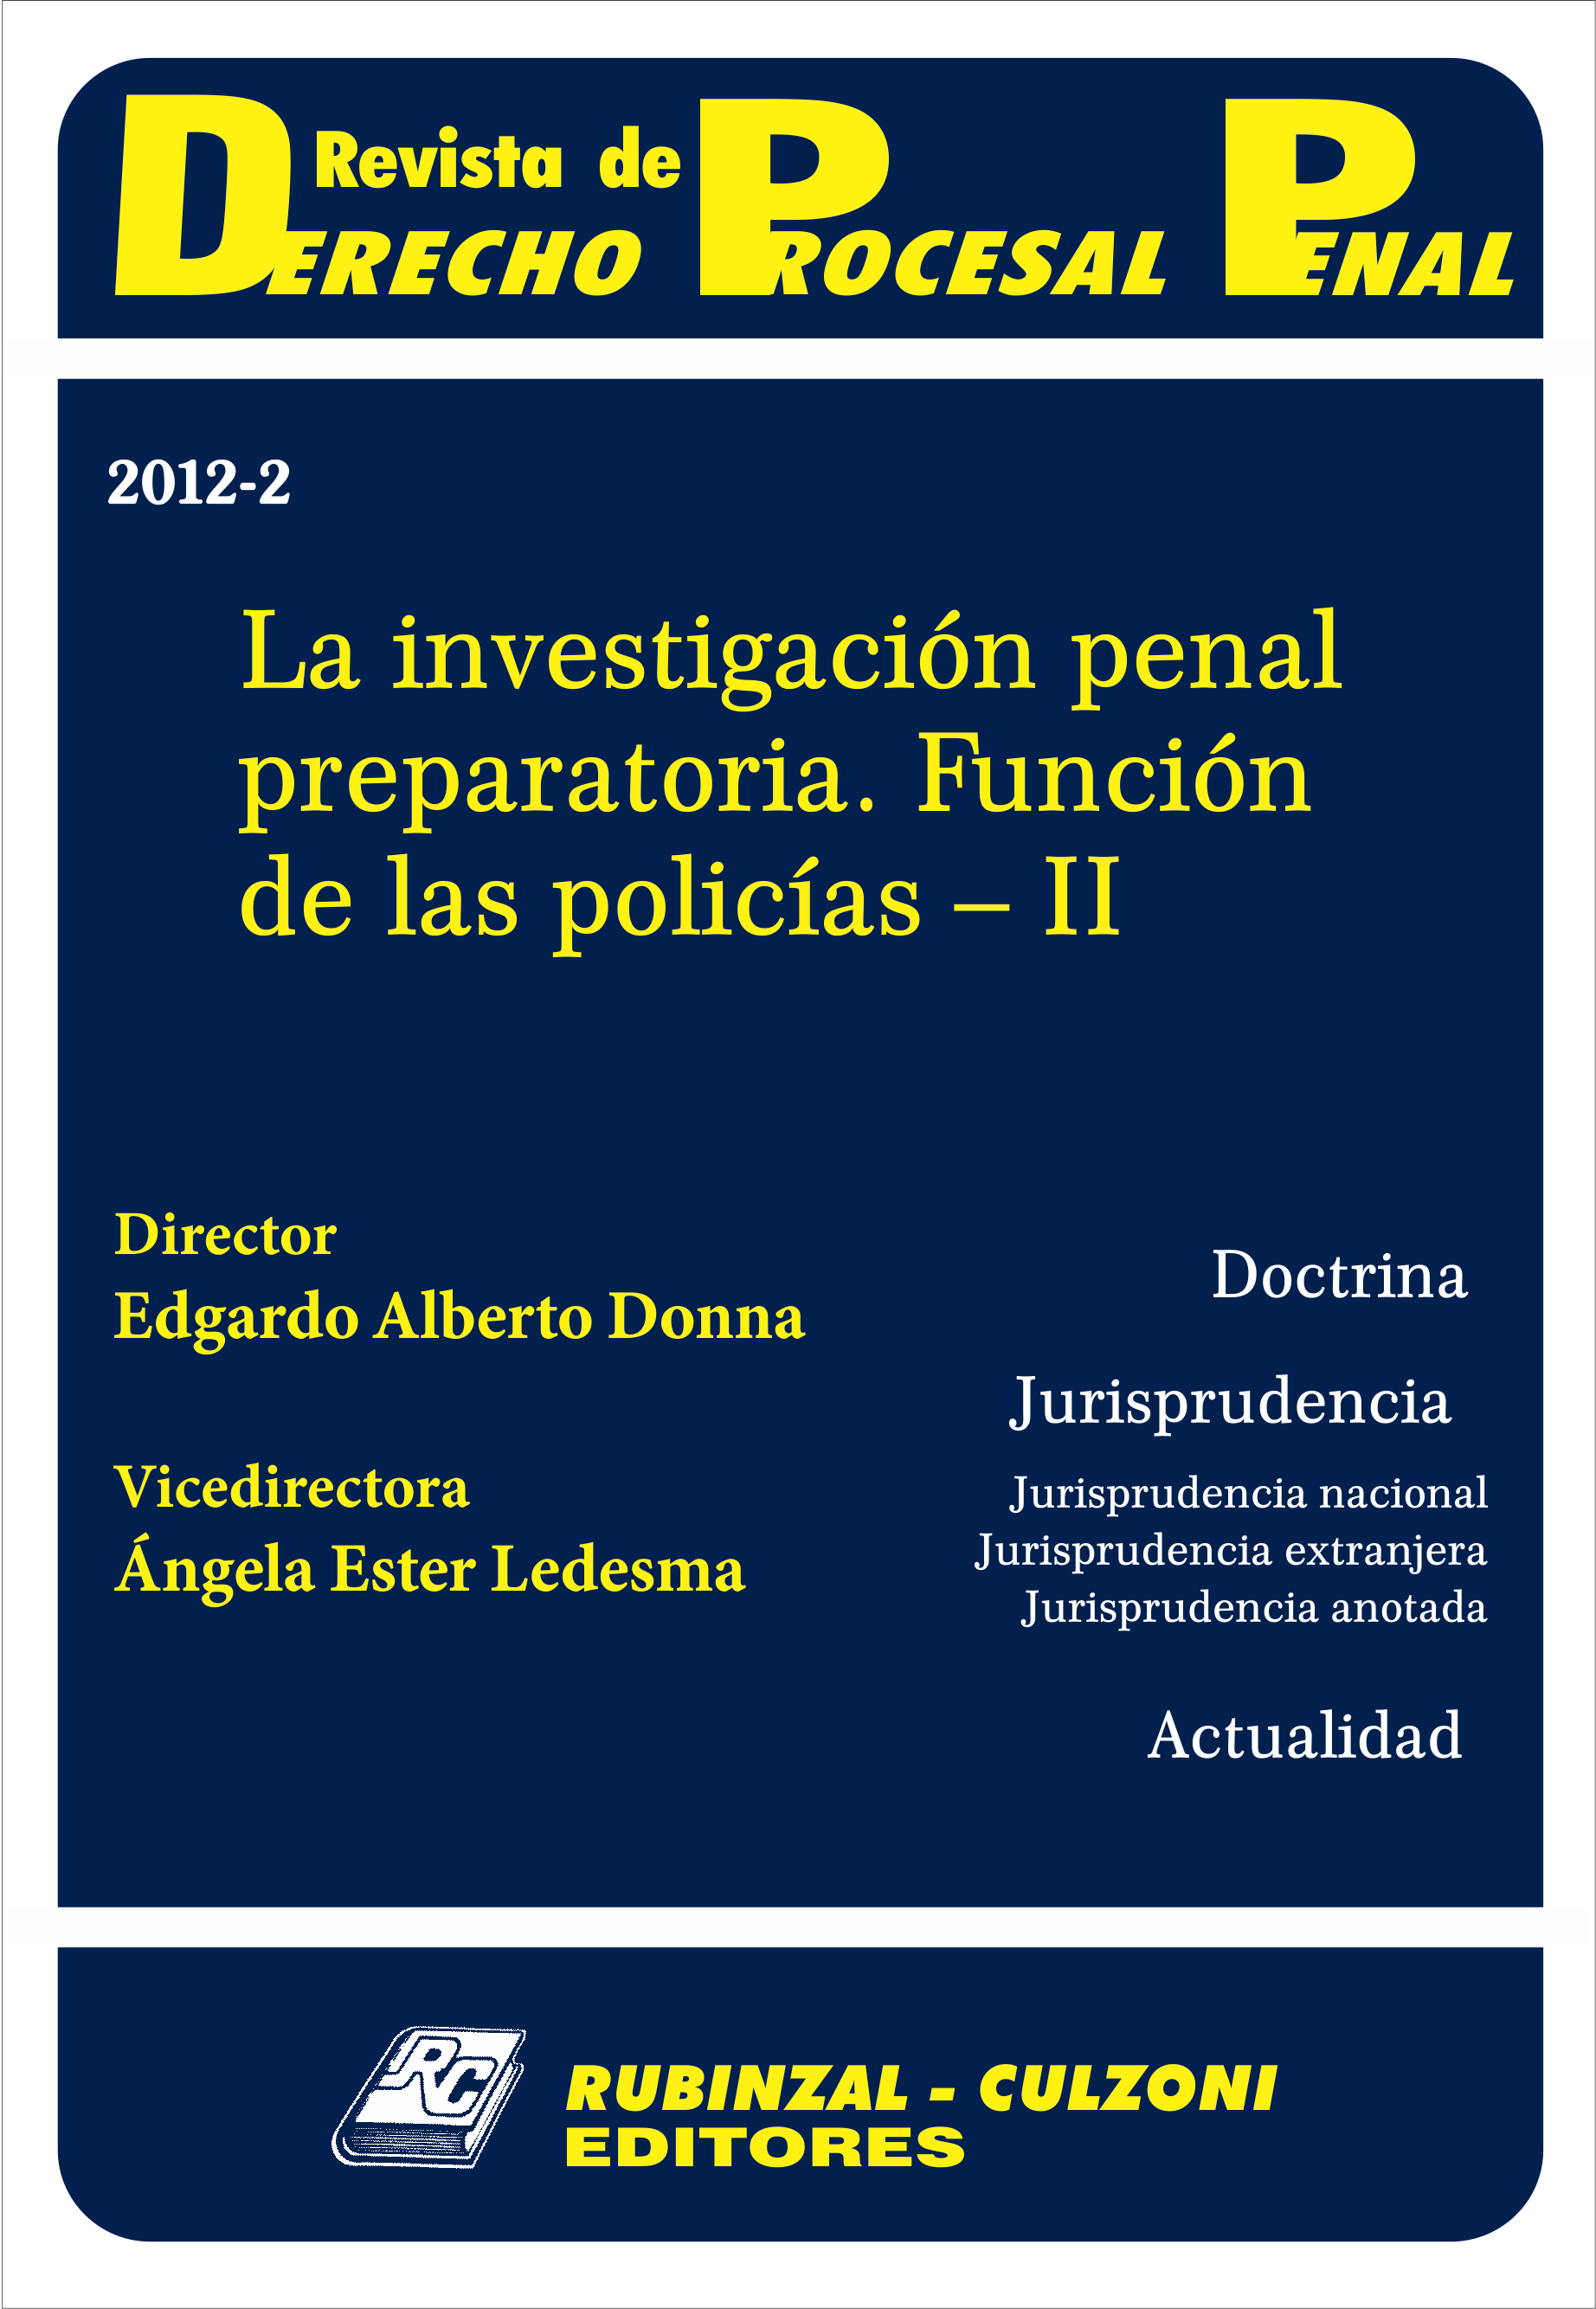 Revista de Derecho Procesal Penal - La investigación penal preparatoria. Función de las policías - II.